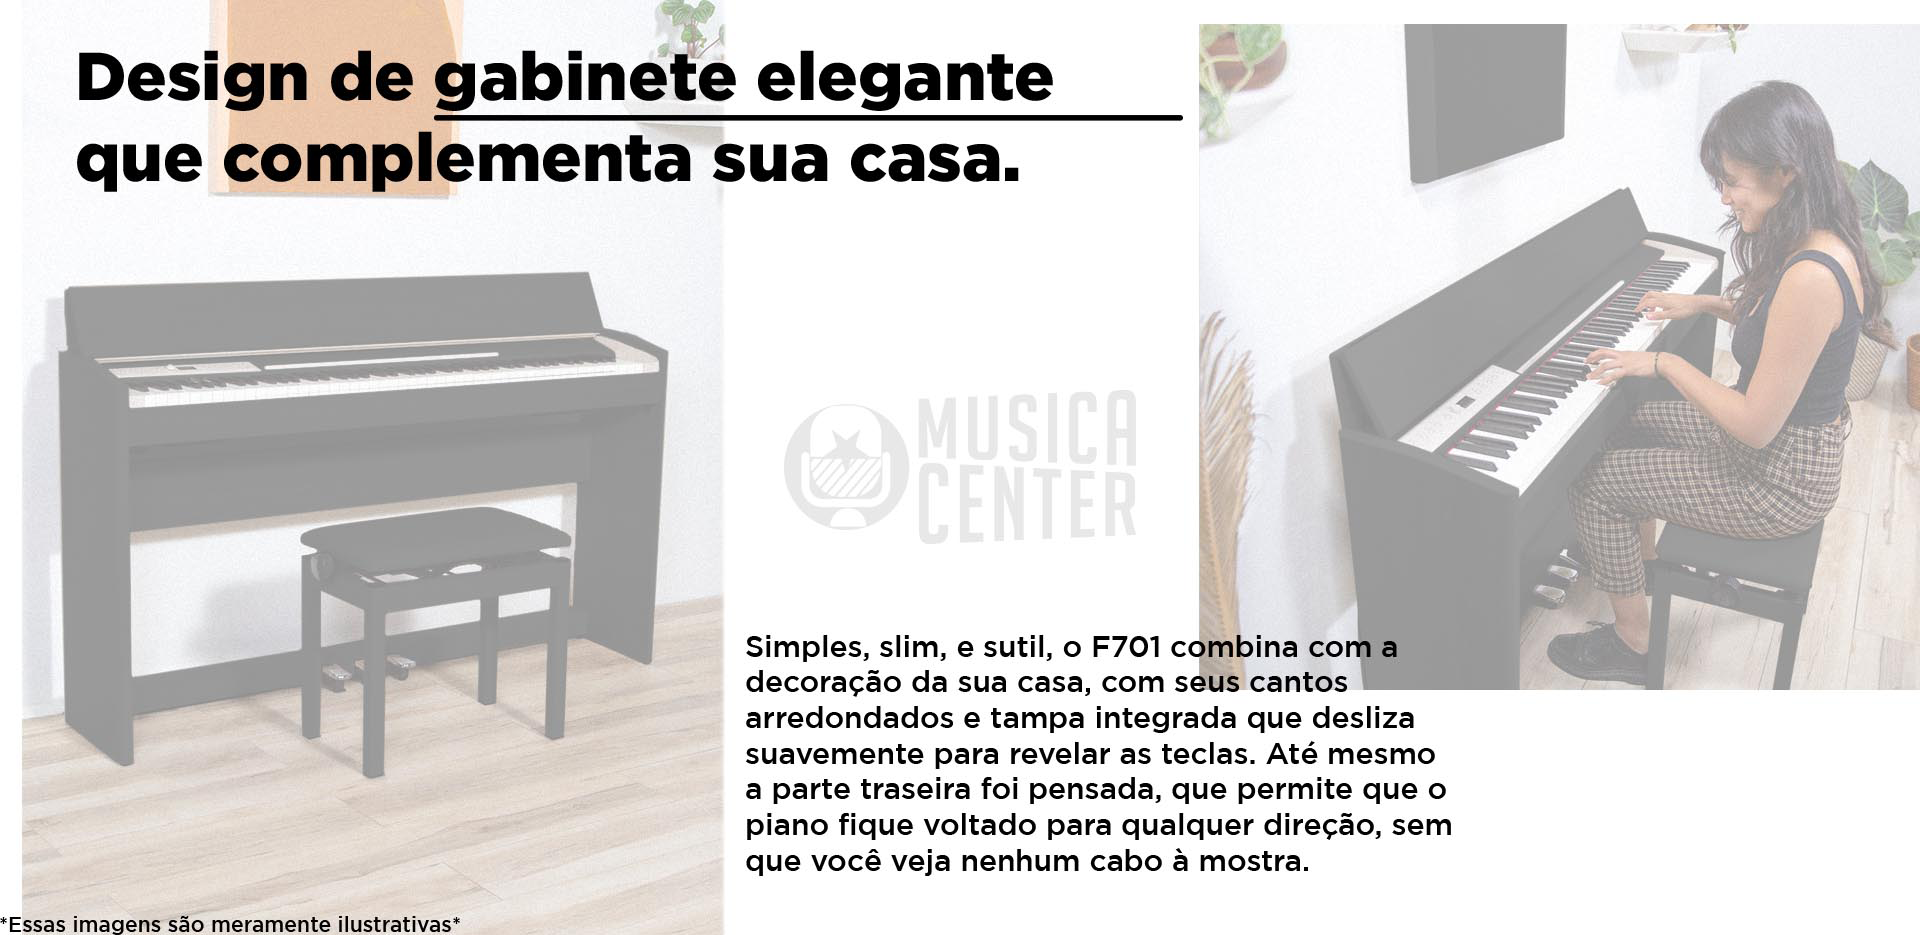 Piano Digital Roland FP701  design de gabinete elegante que complementa sua casa.